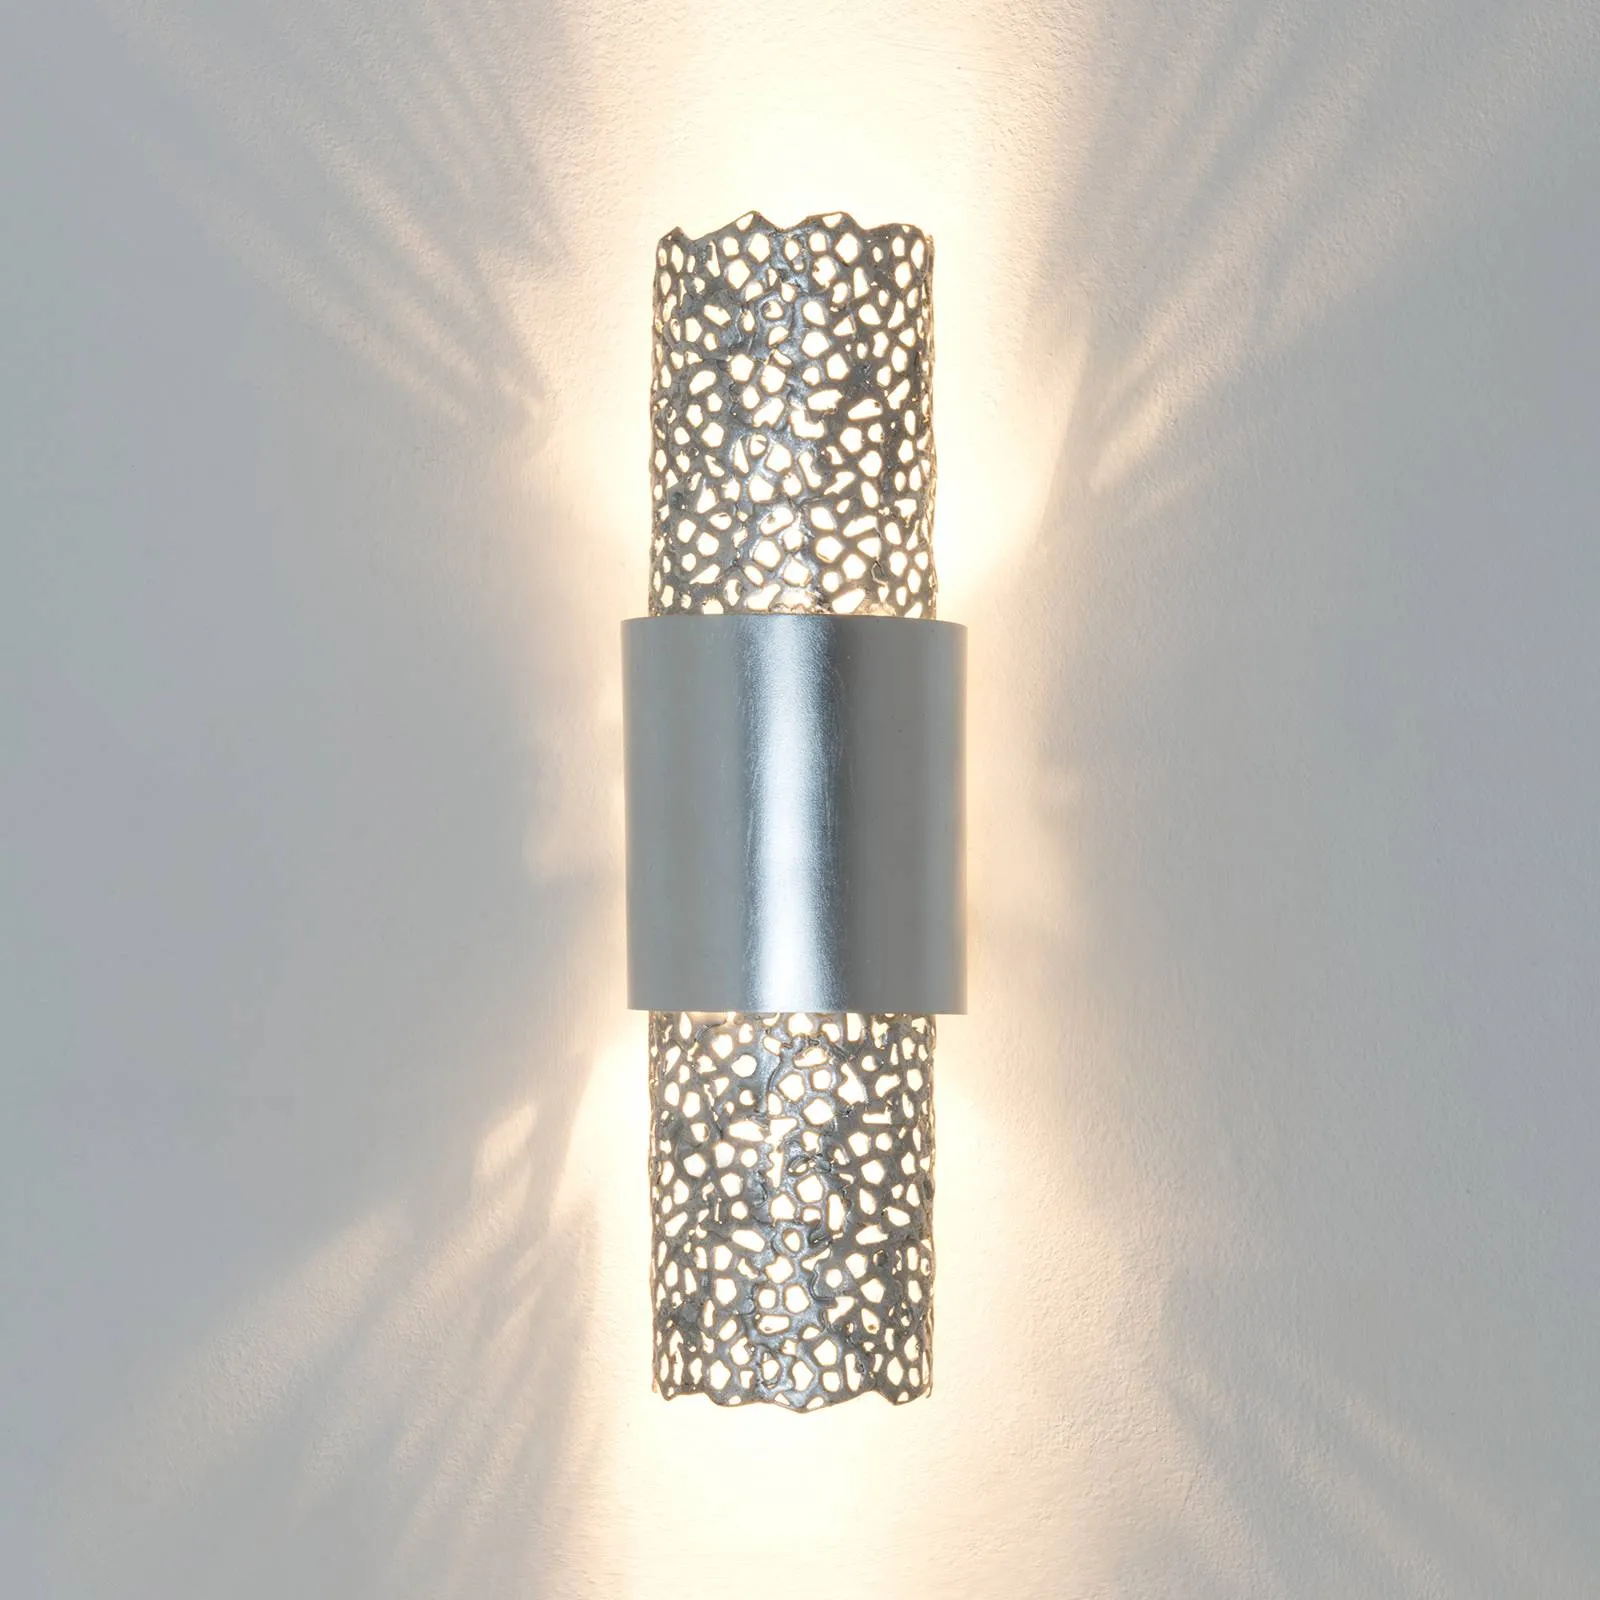 Impressive wall lamp Utopistica silver matte